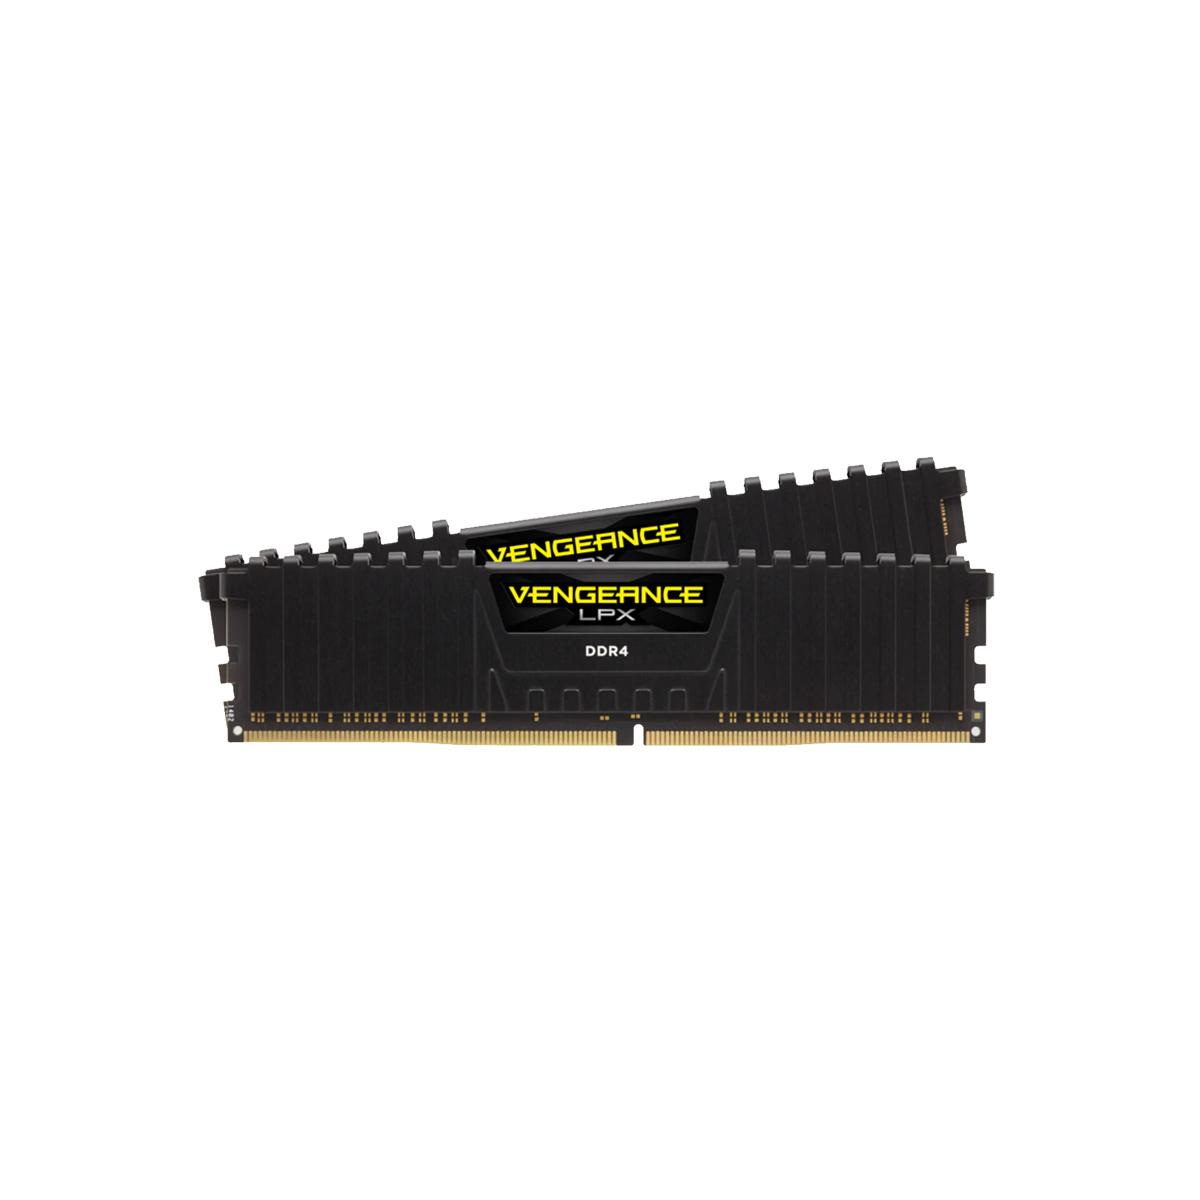 MEMORIA DIMM DDR4 CORSAIR (CMK16GX4M2C3600C20) 16GB 3600MHZ (2X8GB) VENGEANCE LPX, NEGRO - CMK16GX4M2C3600C20